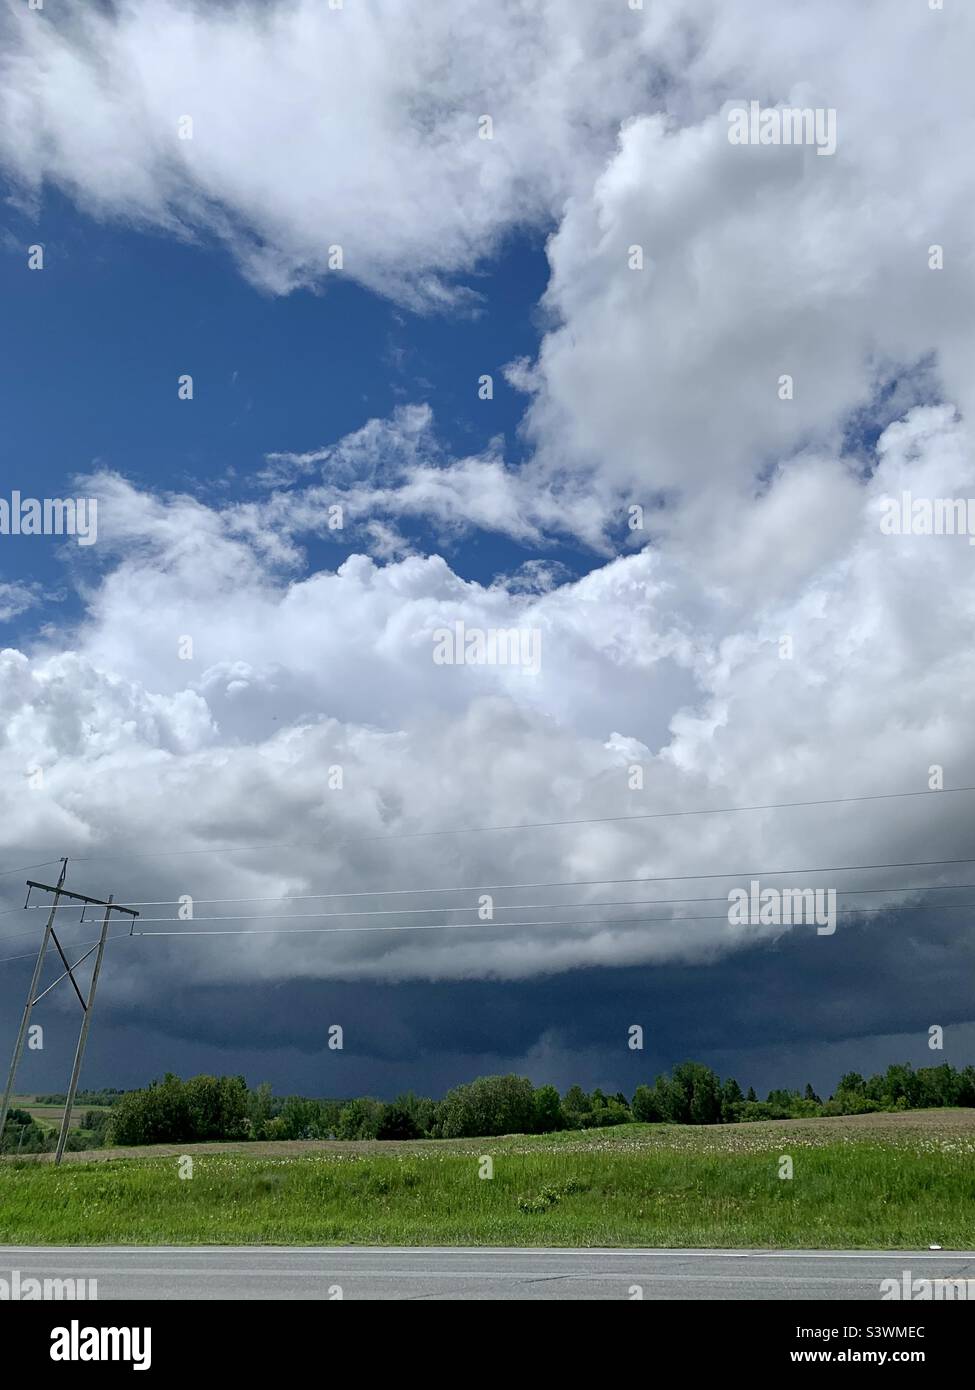 Una tempesta estiva che passa attraverso il campo. Cielo blu sopra le nuvole, soffice bianco sulla parte superiore e pesante e scuro sotto, la pioggia ruscella giù in lontananza. Foto Stock